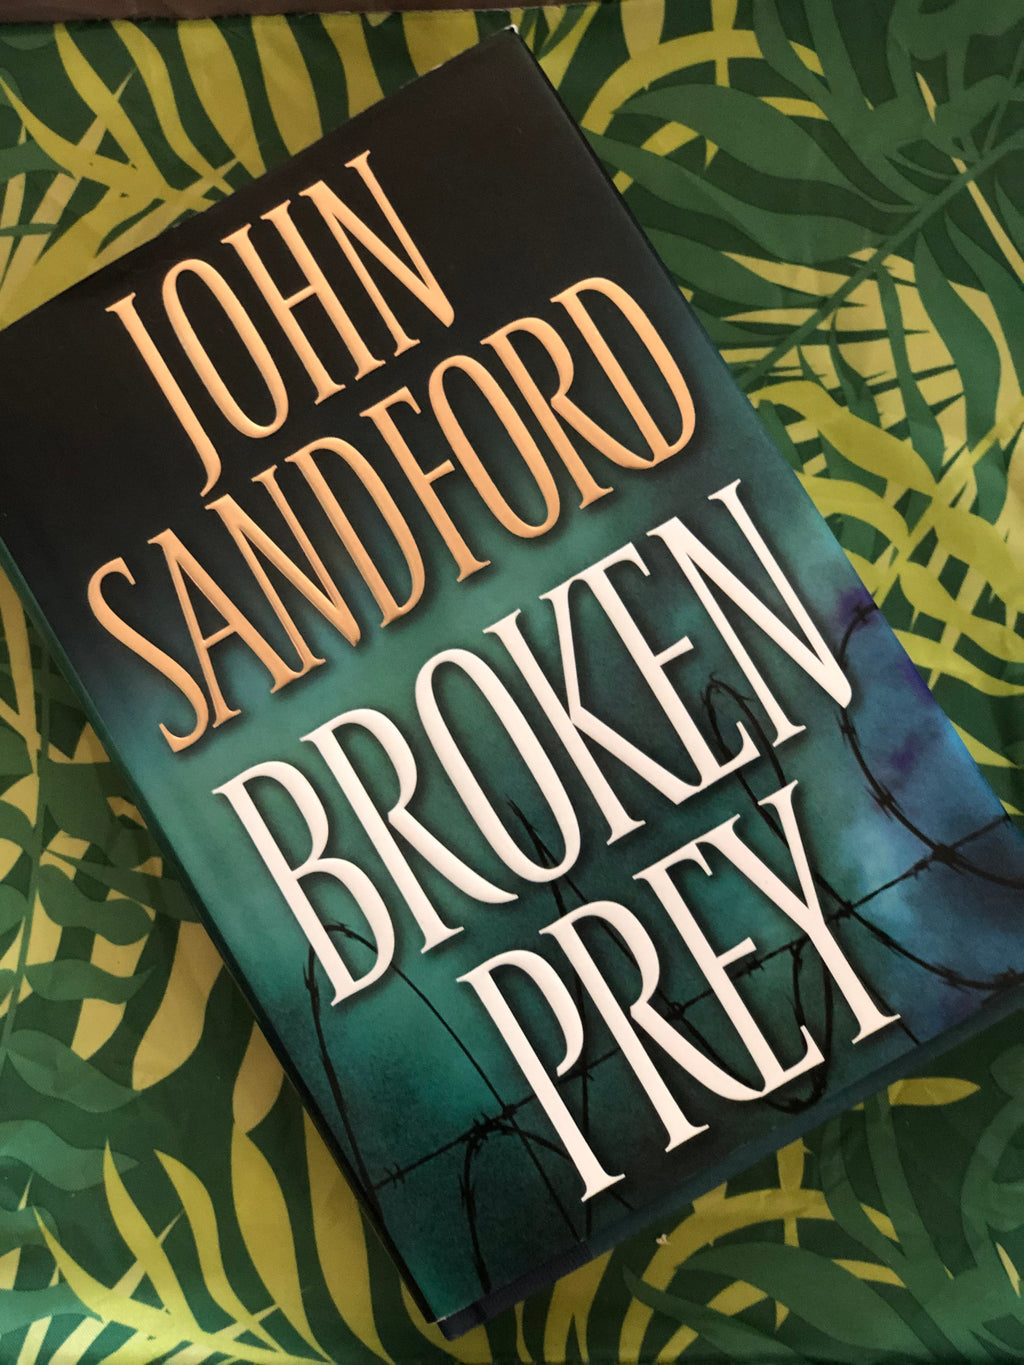 Broken Prey- By John Sandford